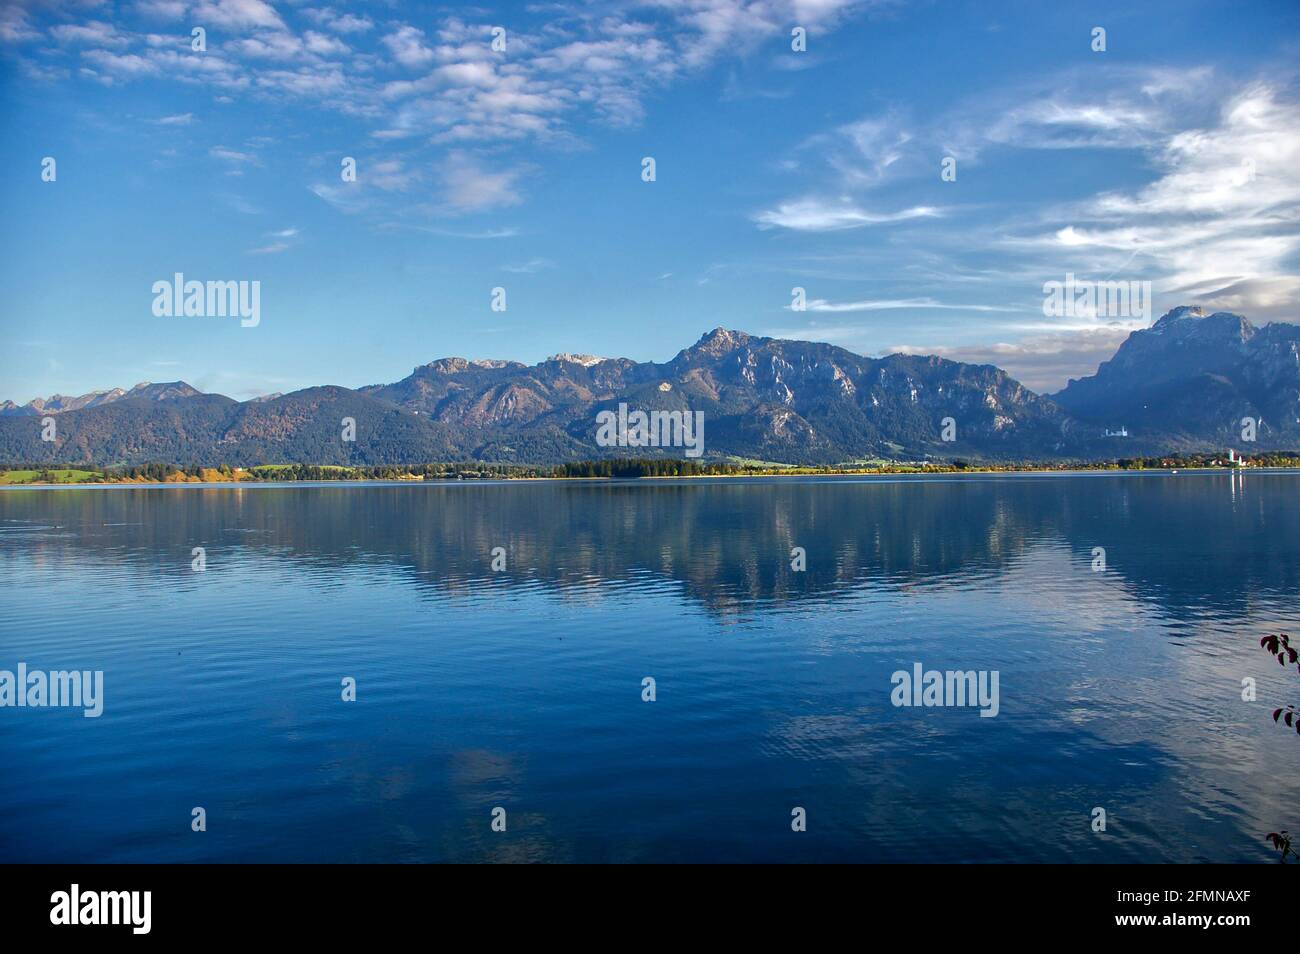 Vue imprenable sur les montagnes rocheuses qui se reflète sur un lac Forggensee en miroir à Allgau, en Allemagne Banque D'Images